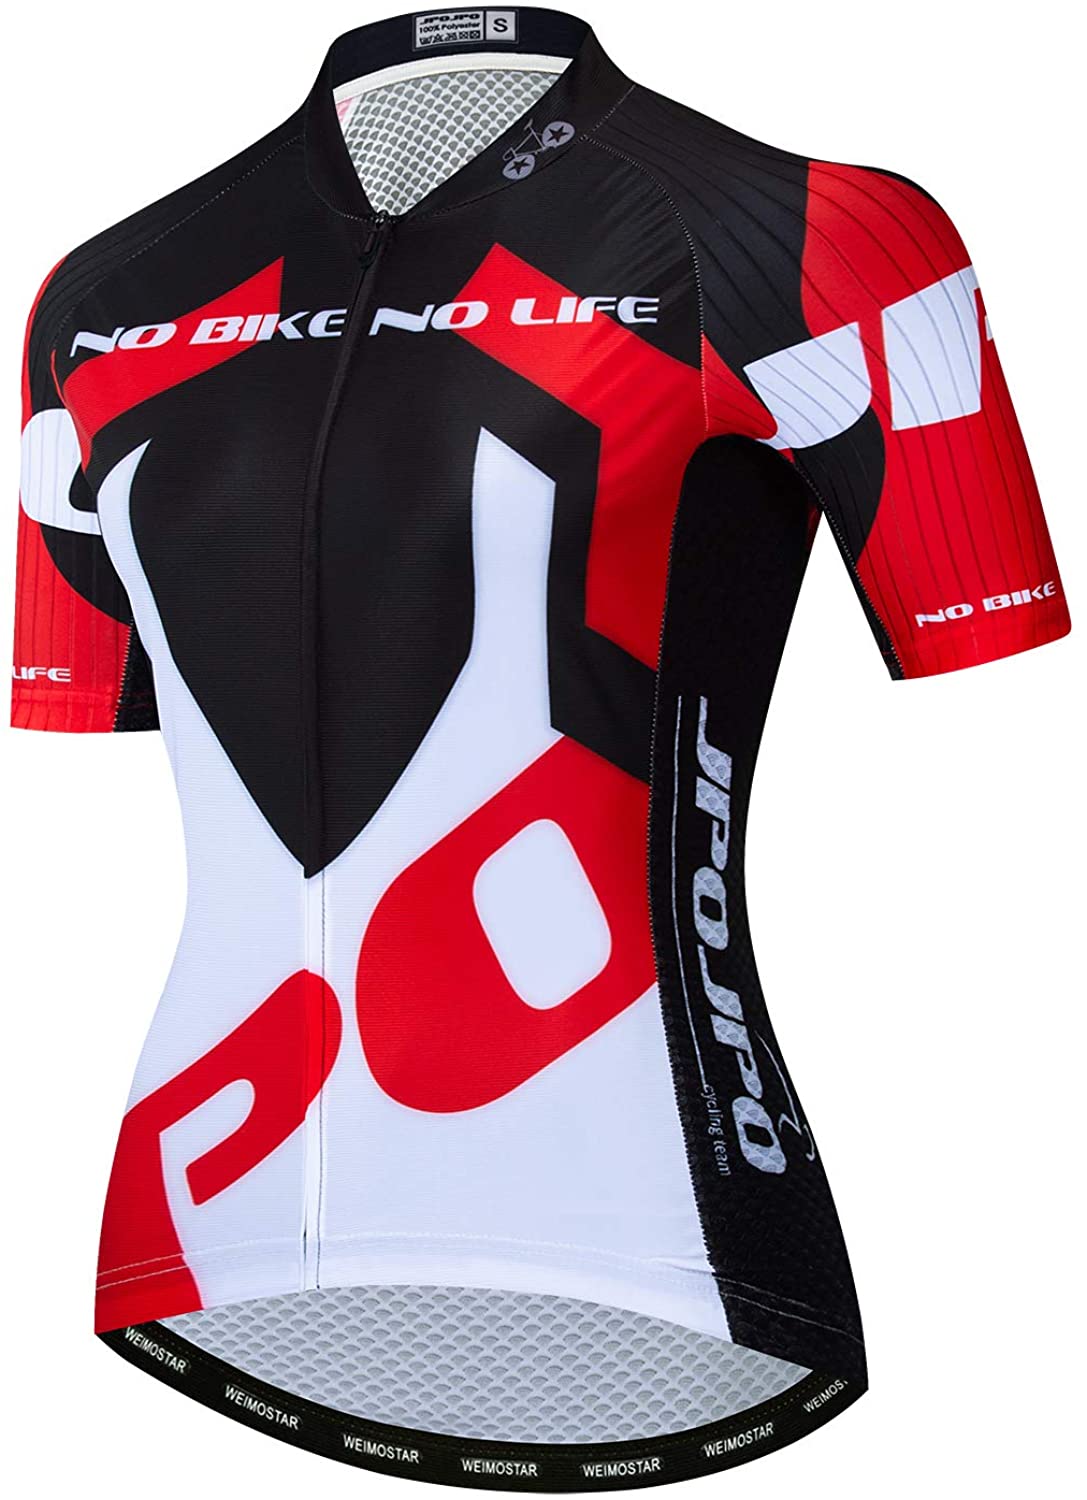 Racing Women's Cycling Shirt Tops S-3XL,4 Pockets JPOJPO Bike Jersey Women